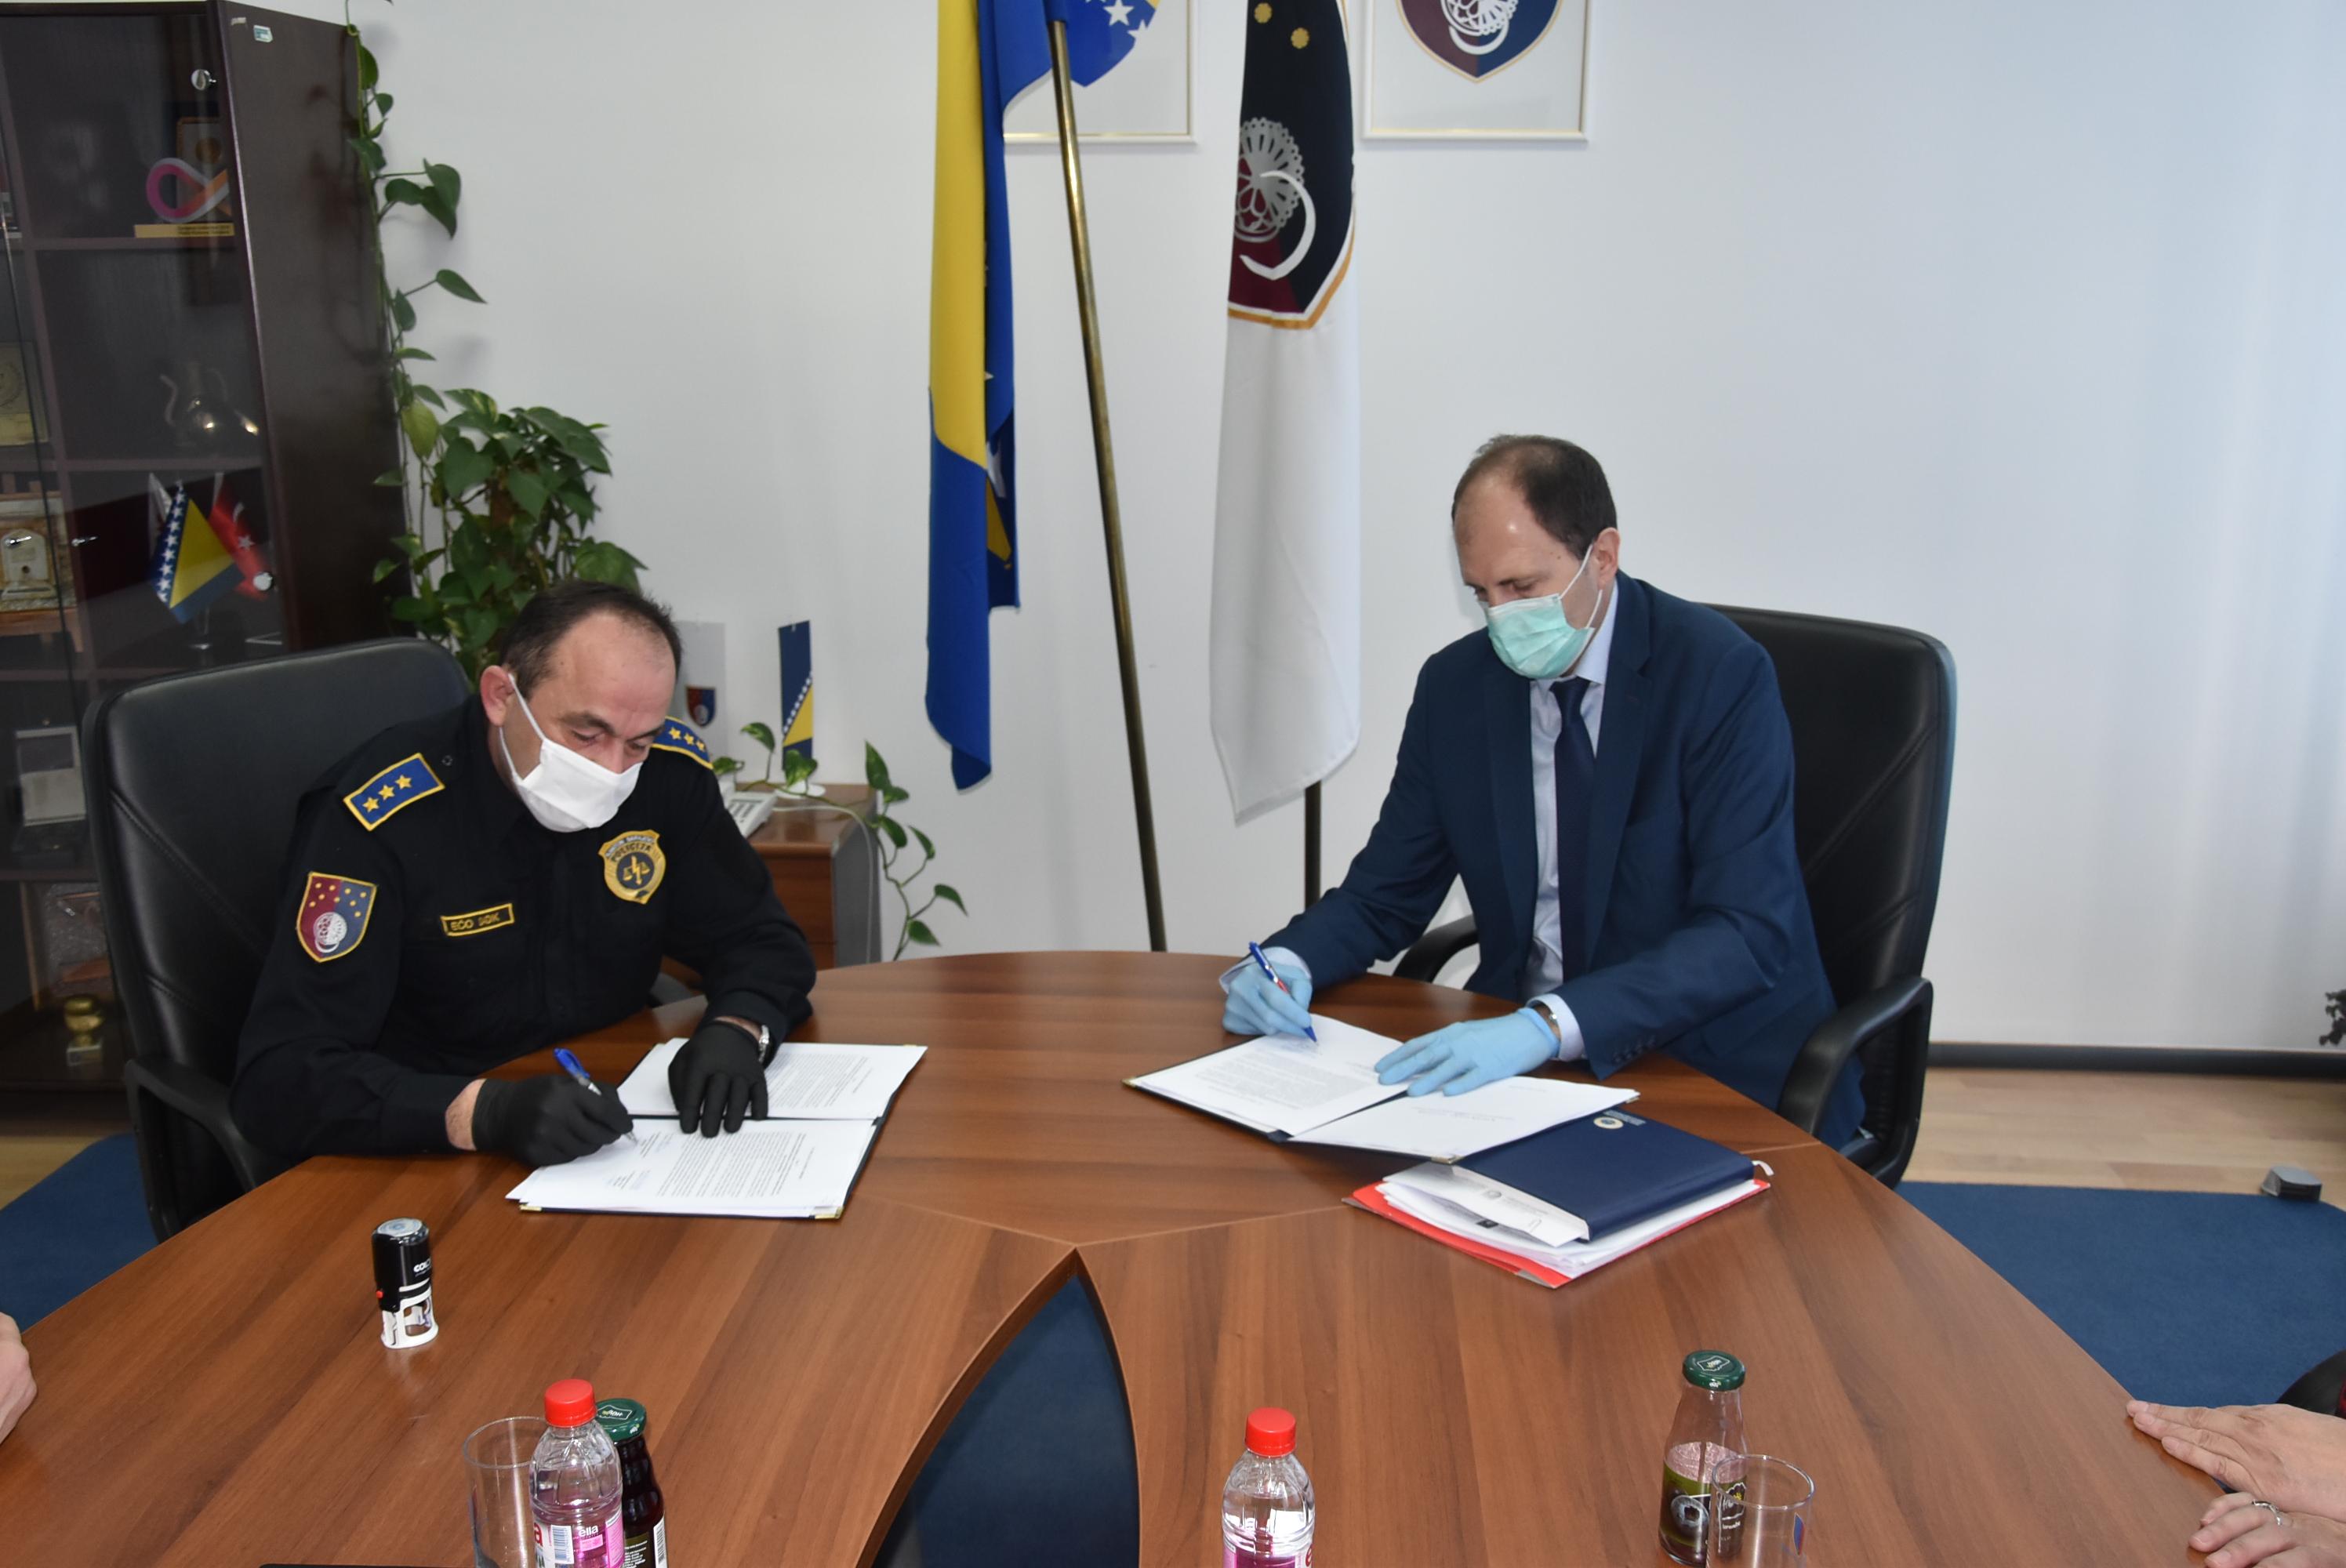 Potpisan Kolektivni ugovor između Vlade KS i Sindikata policije